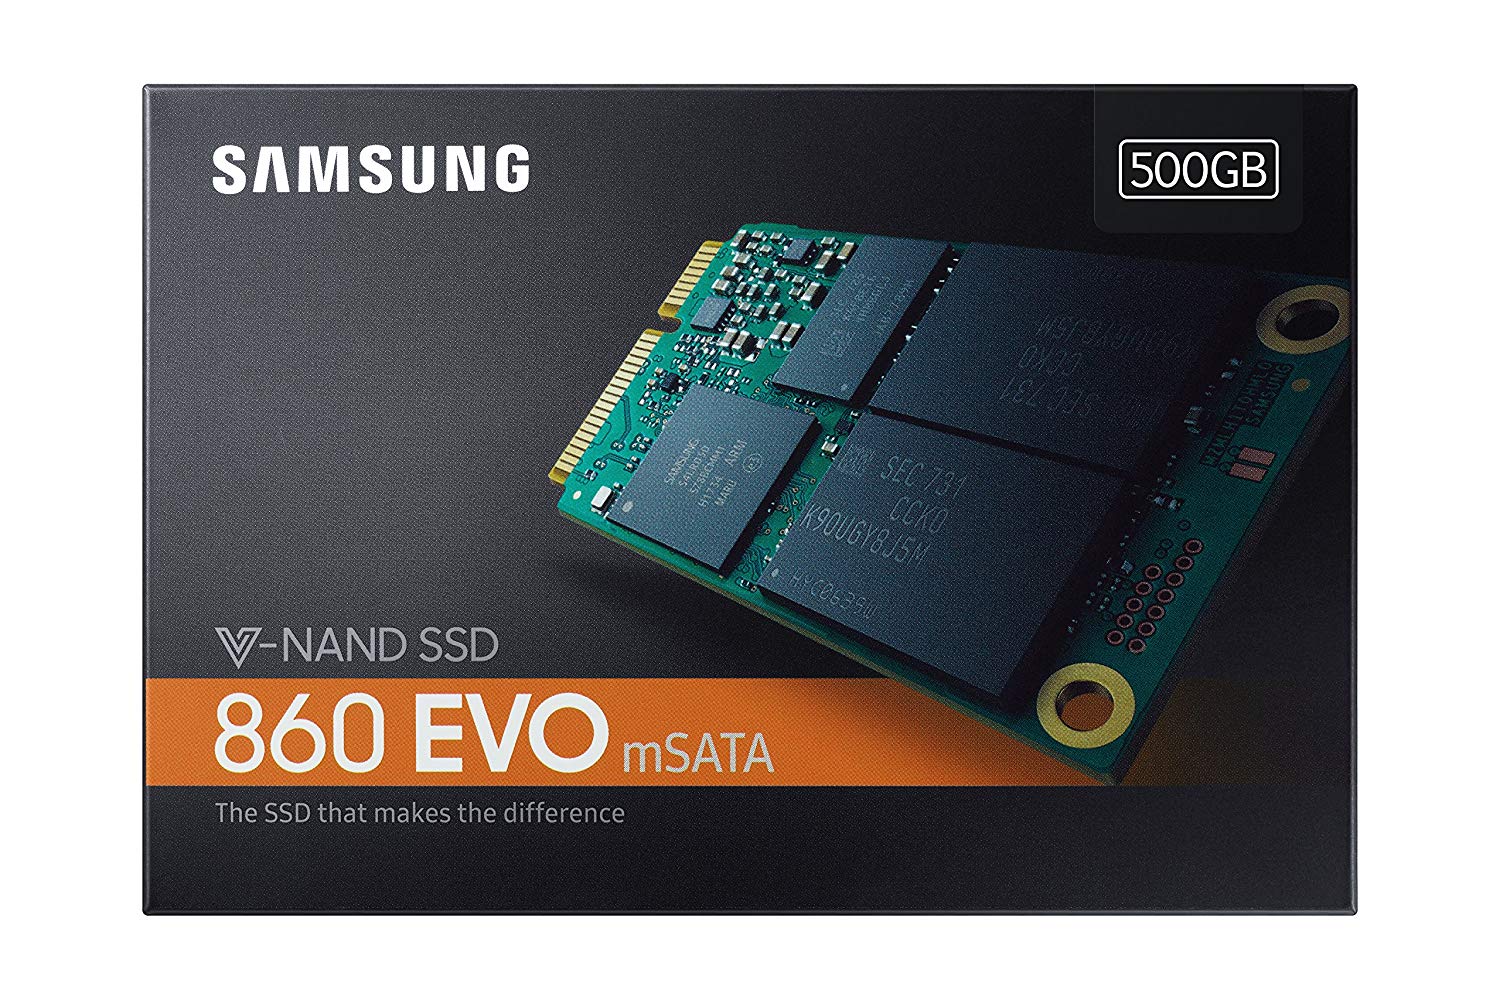 SSD Samsung 860 Evo msata 500GB solo 77,9€